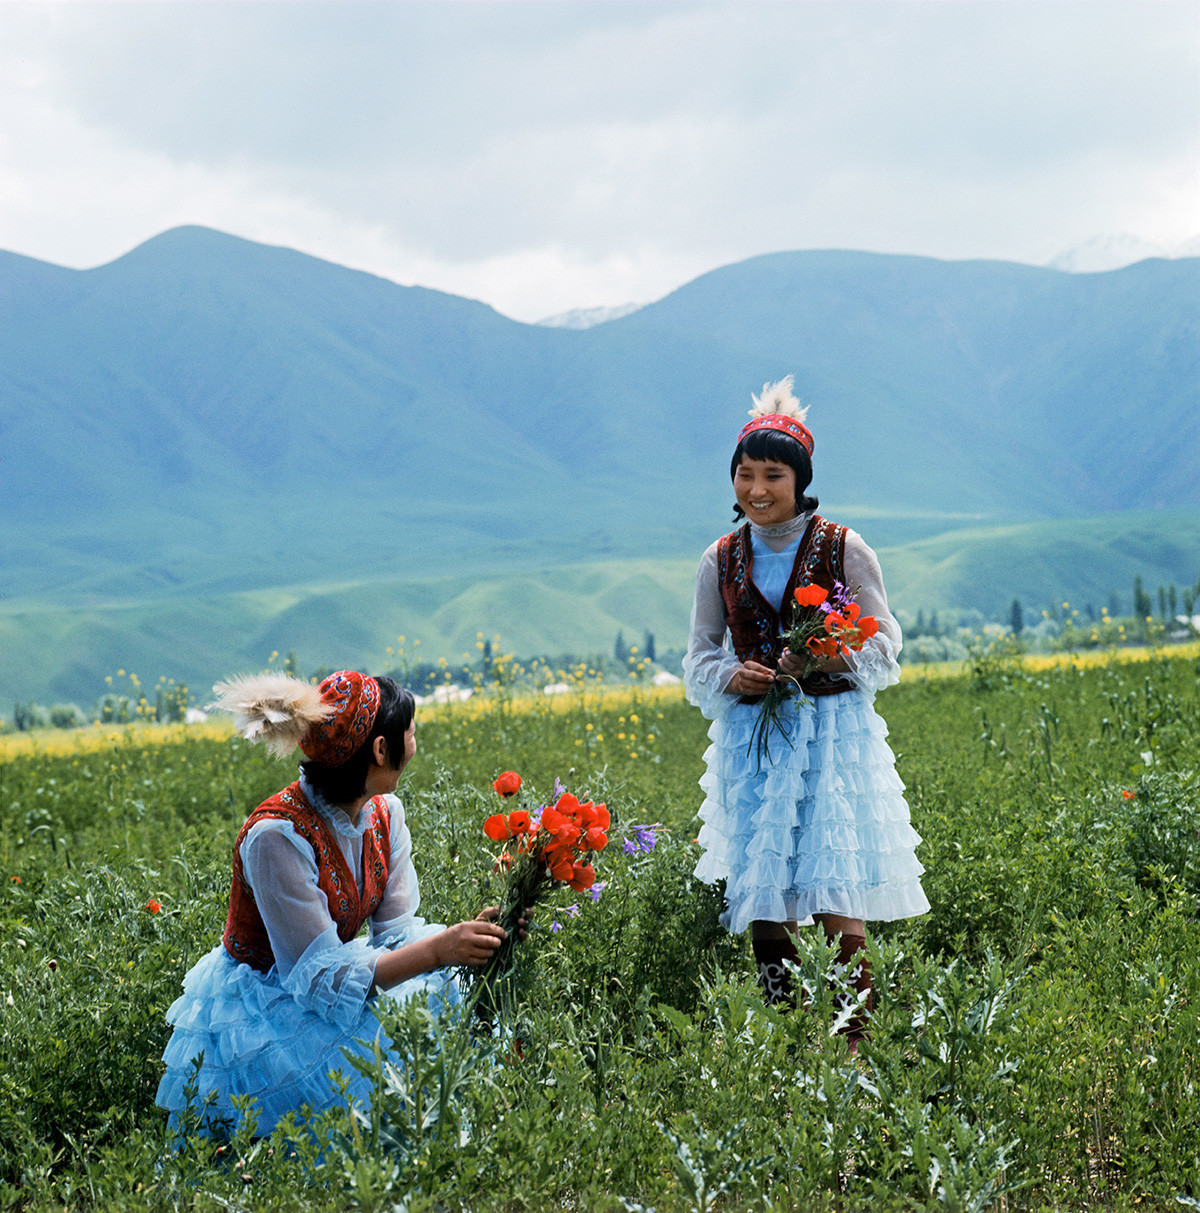 Jovens quirguizes em vestidos tradicionais
